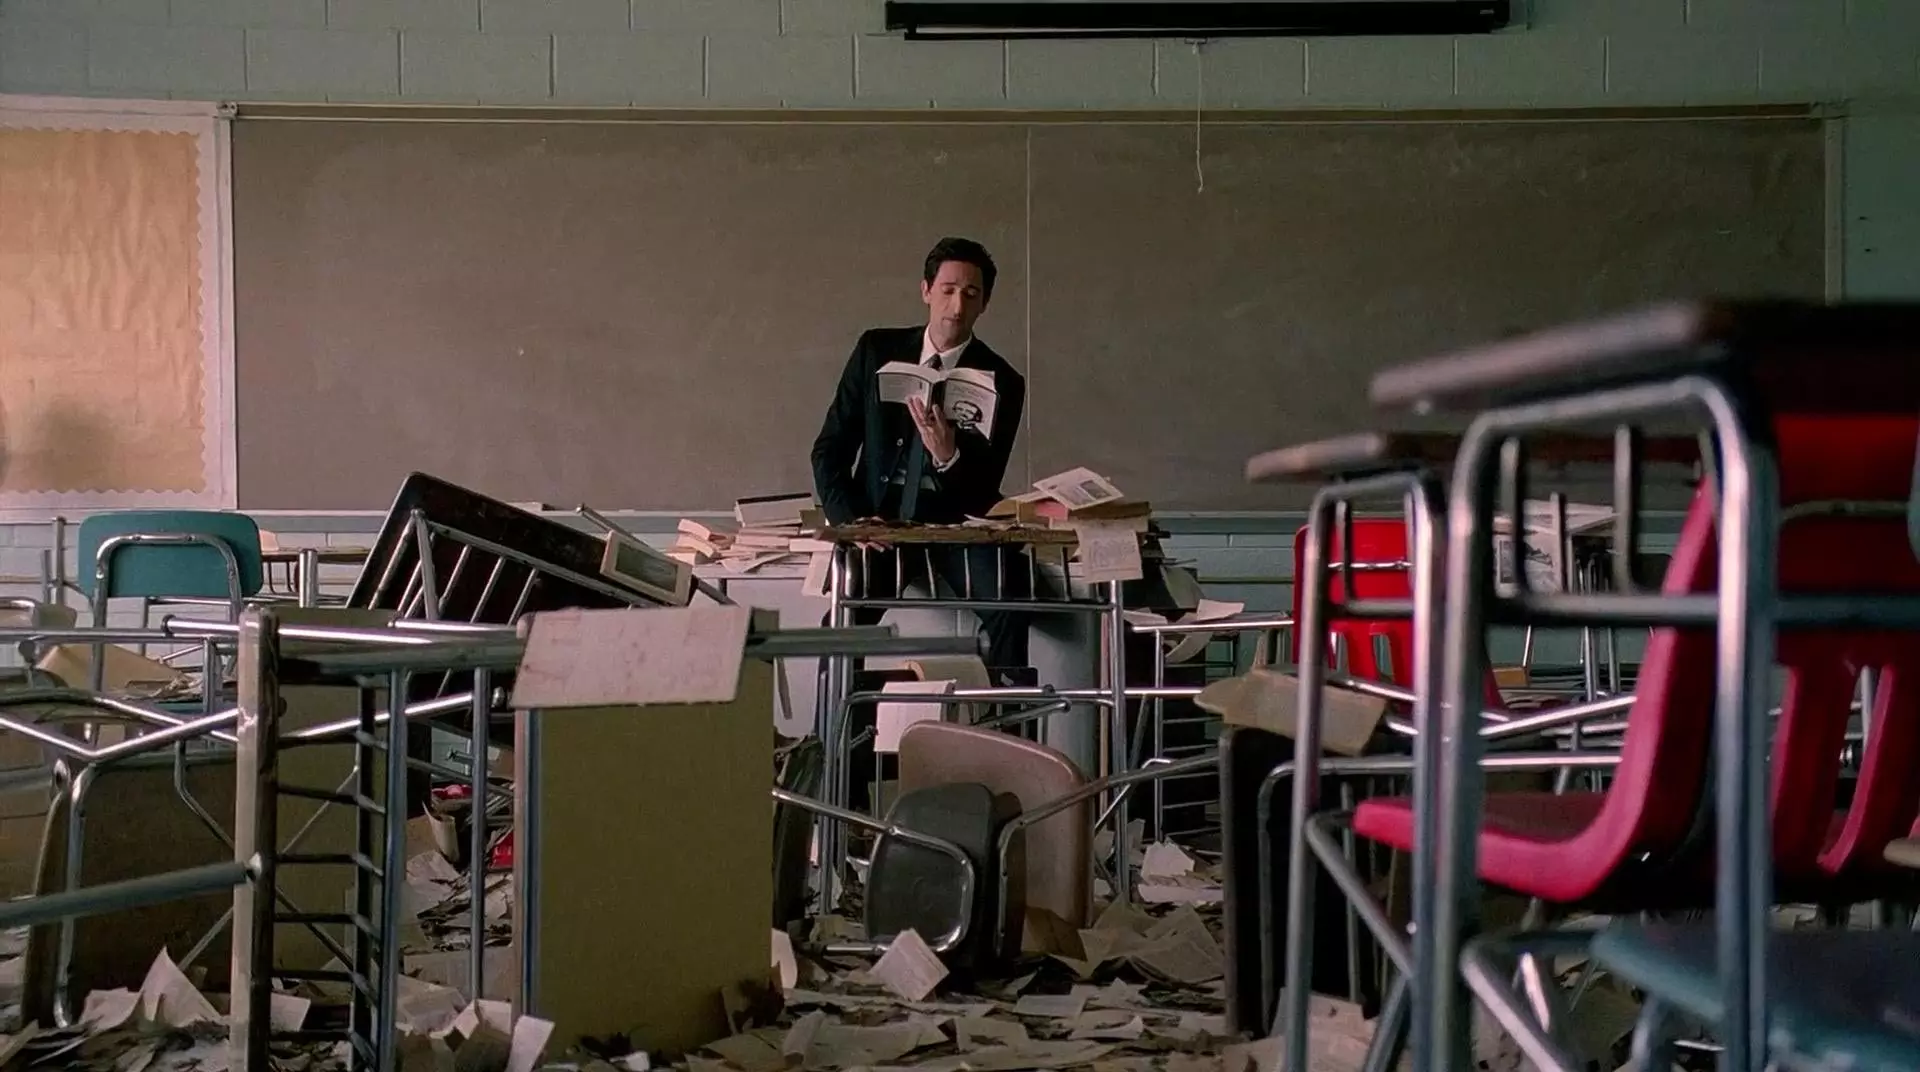 آدرین برودی در میان کلاسی تخریب شده با میز و صندلیهای شکسته در حال خواندن کتاب